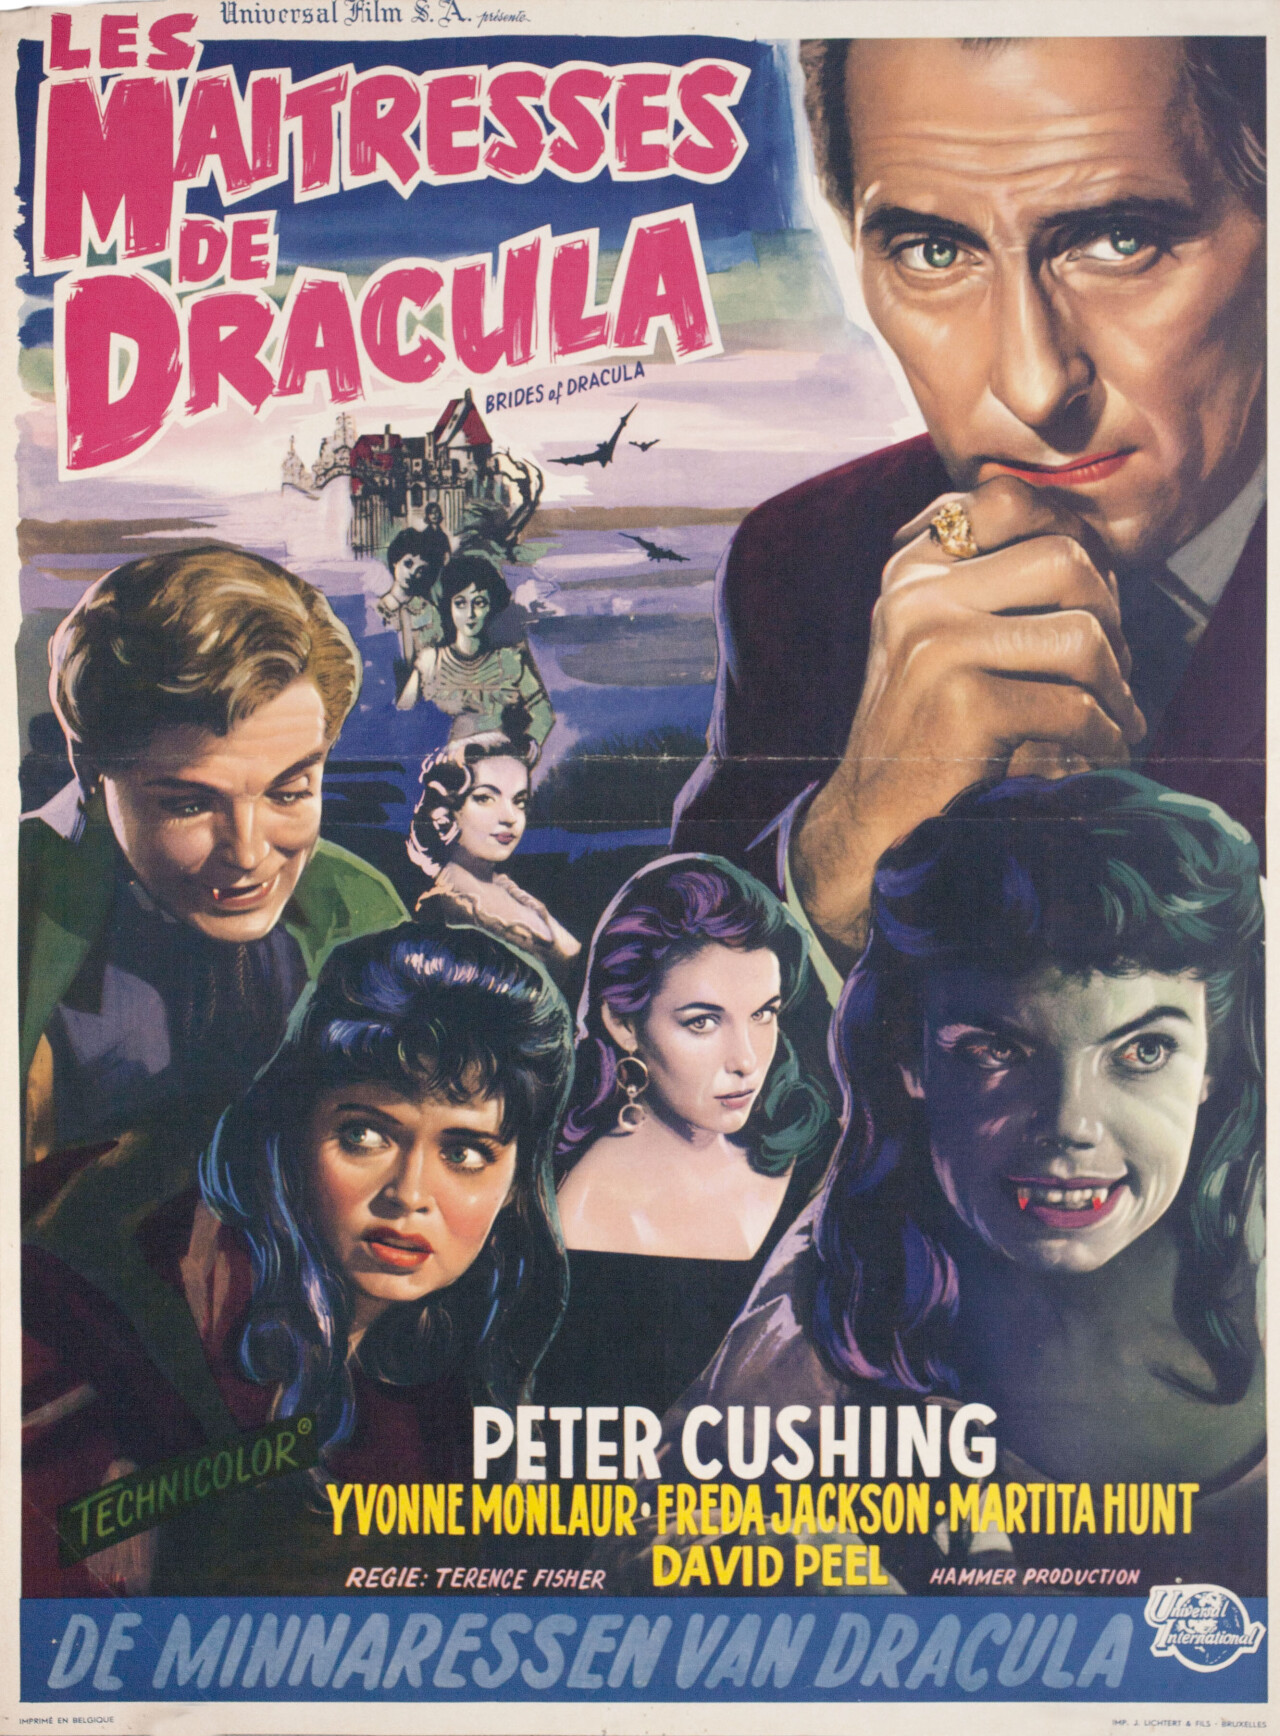 Невесты Дракулы (The Brides of Dracula, 1960), режиссёр Теренс Фишер, бельгийский постер к фильму (Hummer horror, 1960 год)